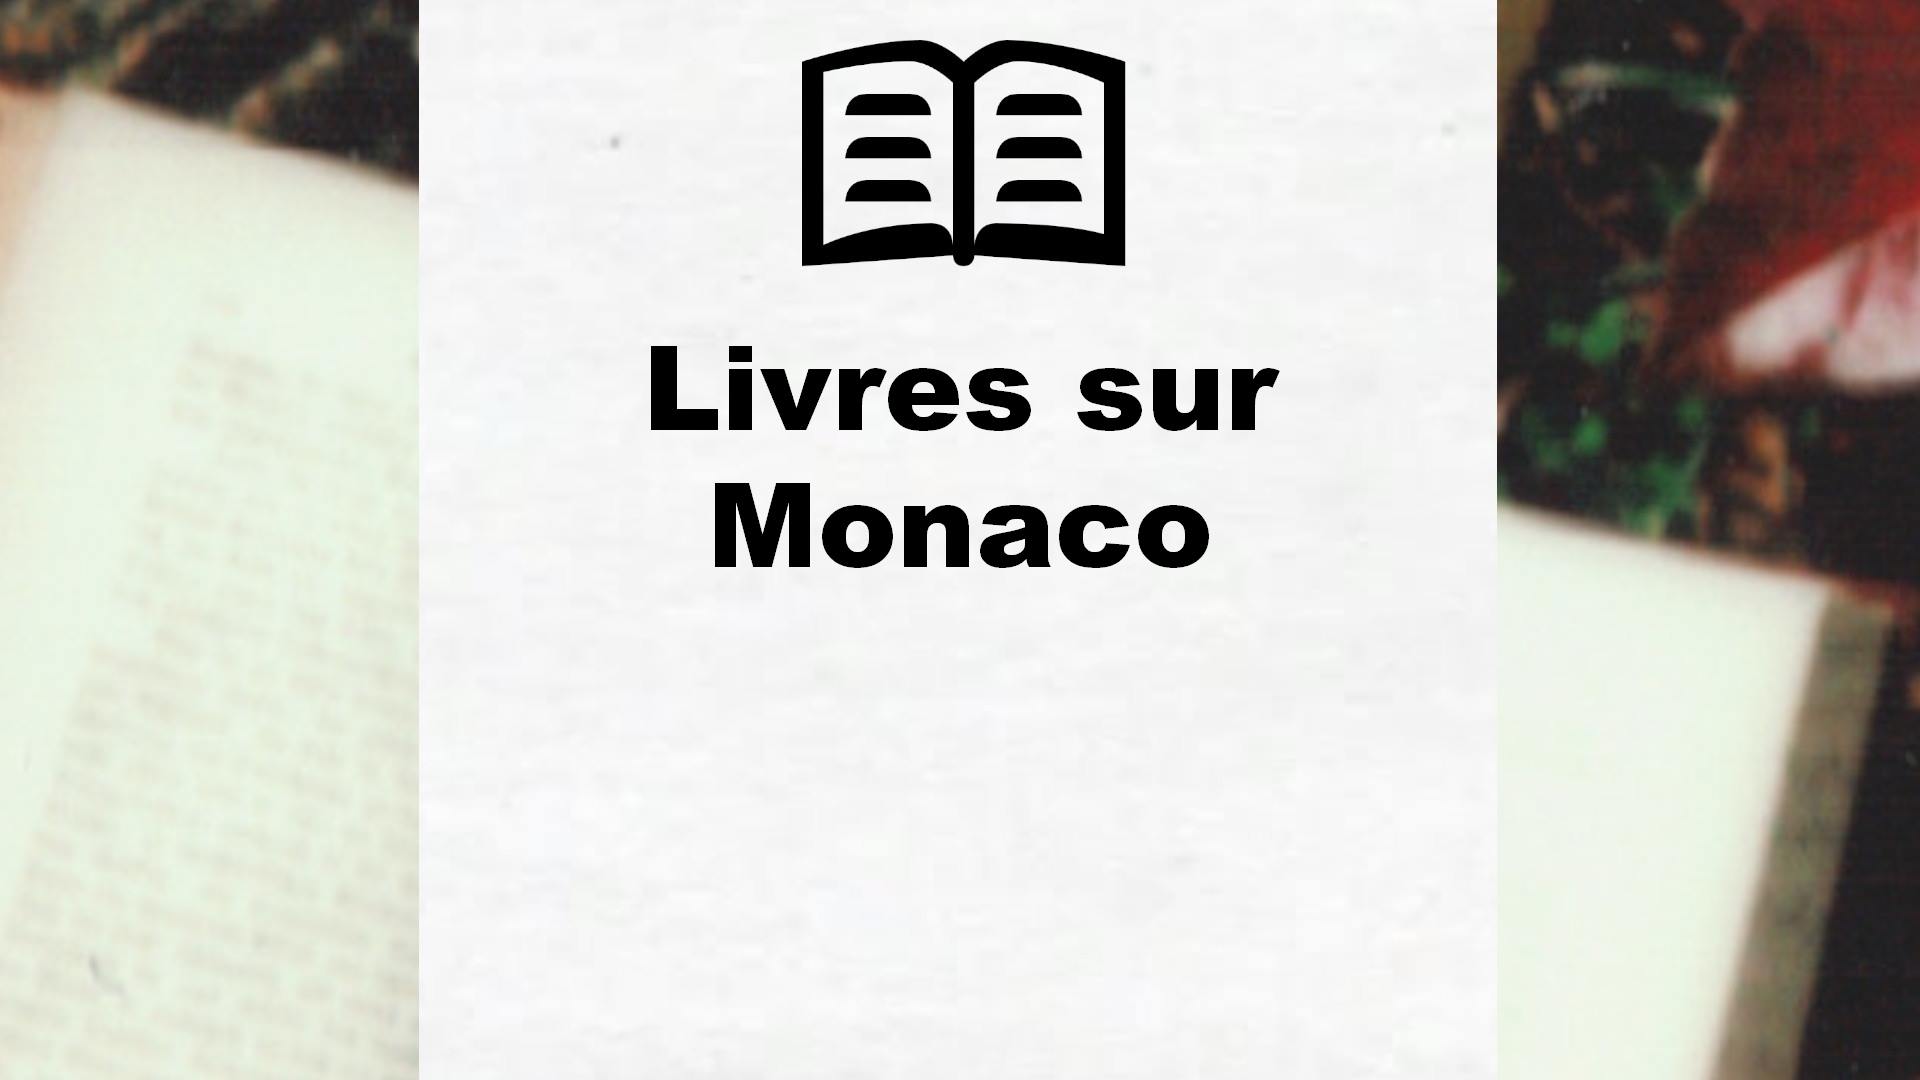 Livres sur Monaco